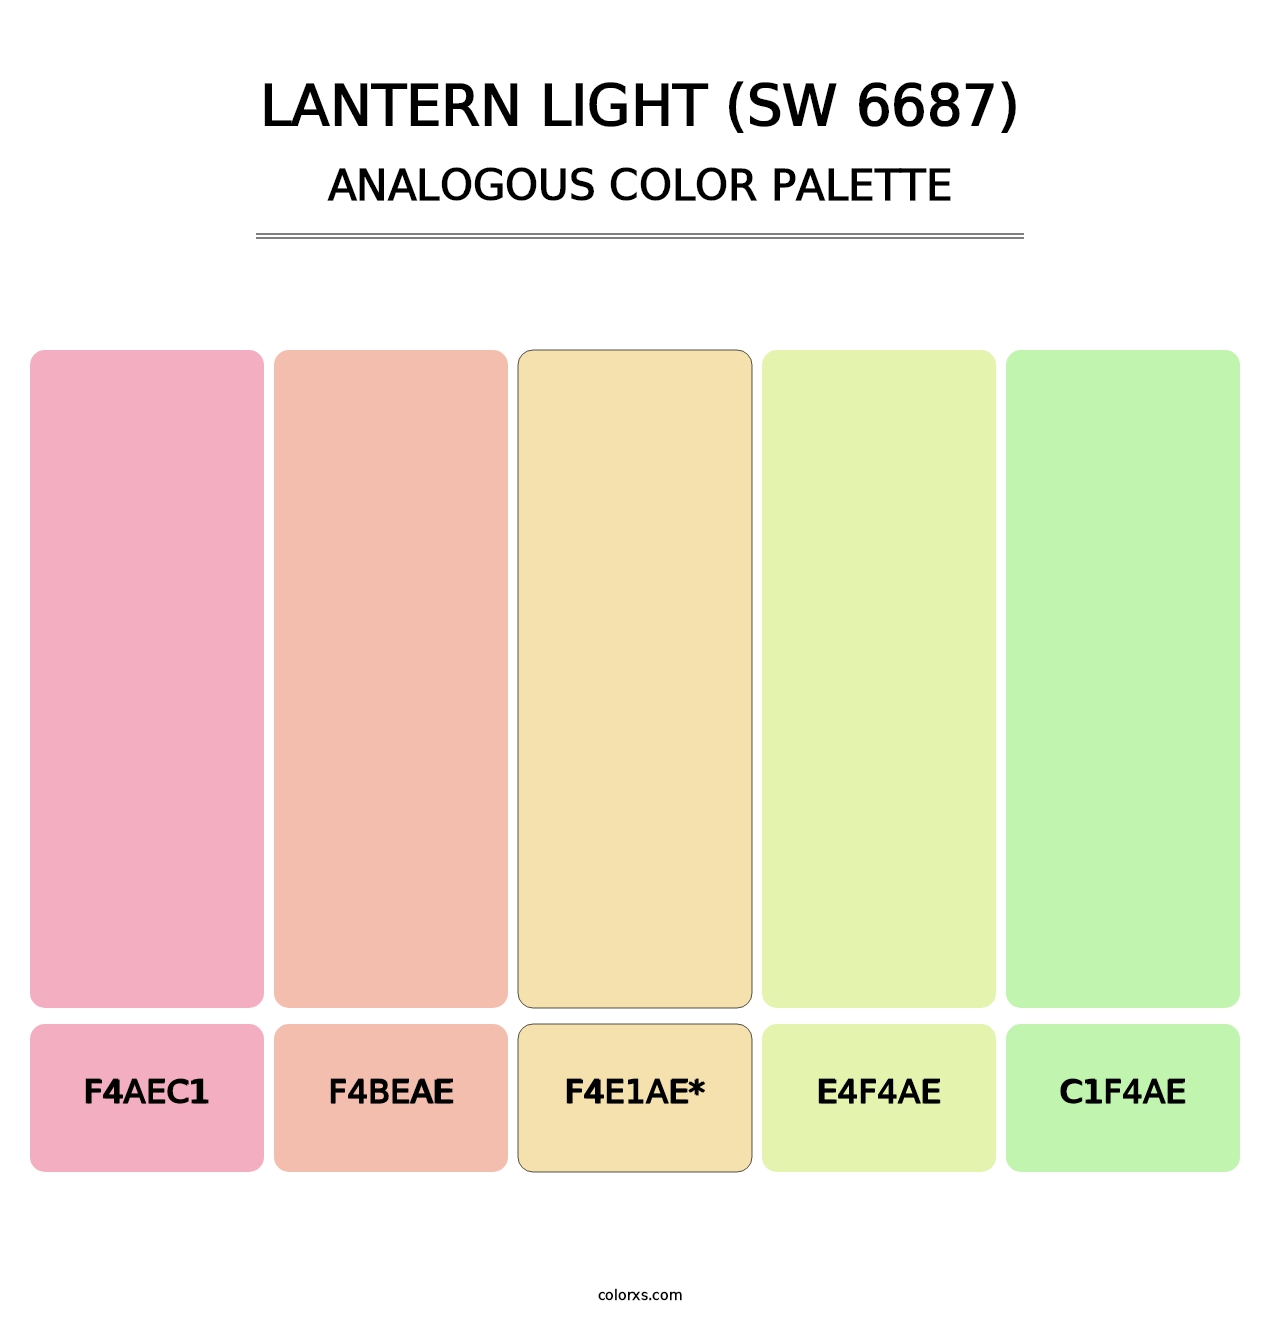 Lantern Light (SW 6687) - Analogous Color Palette